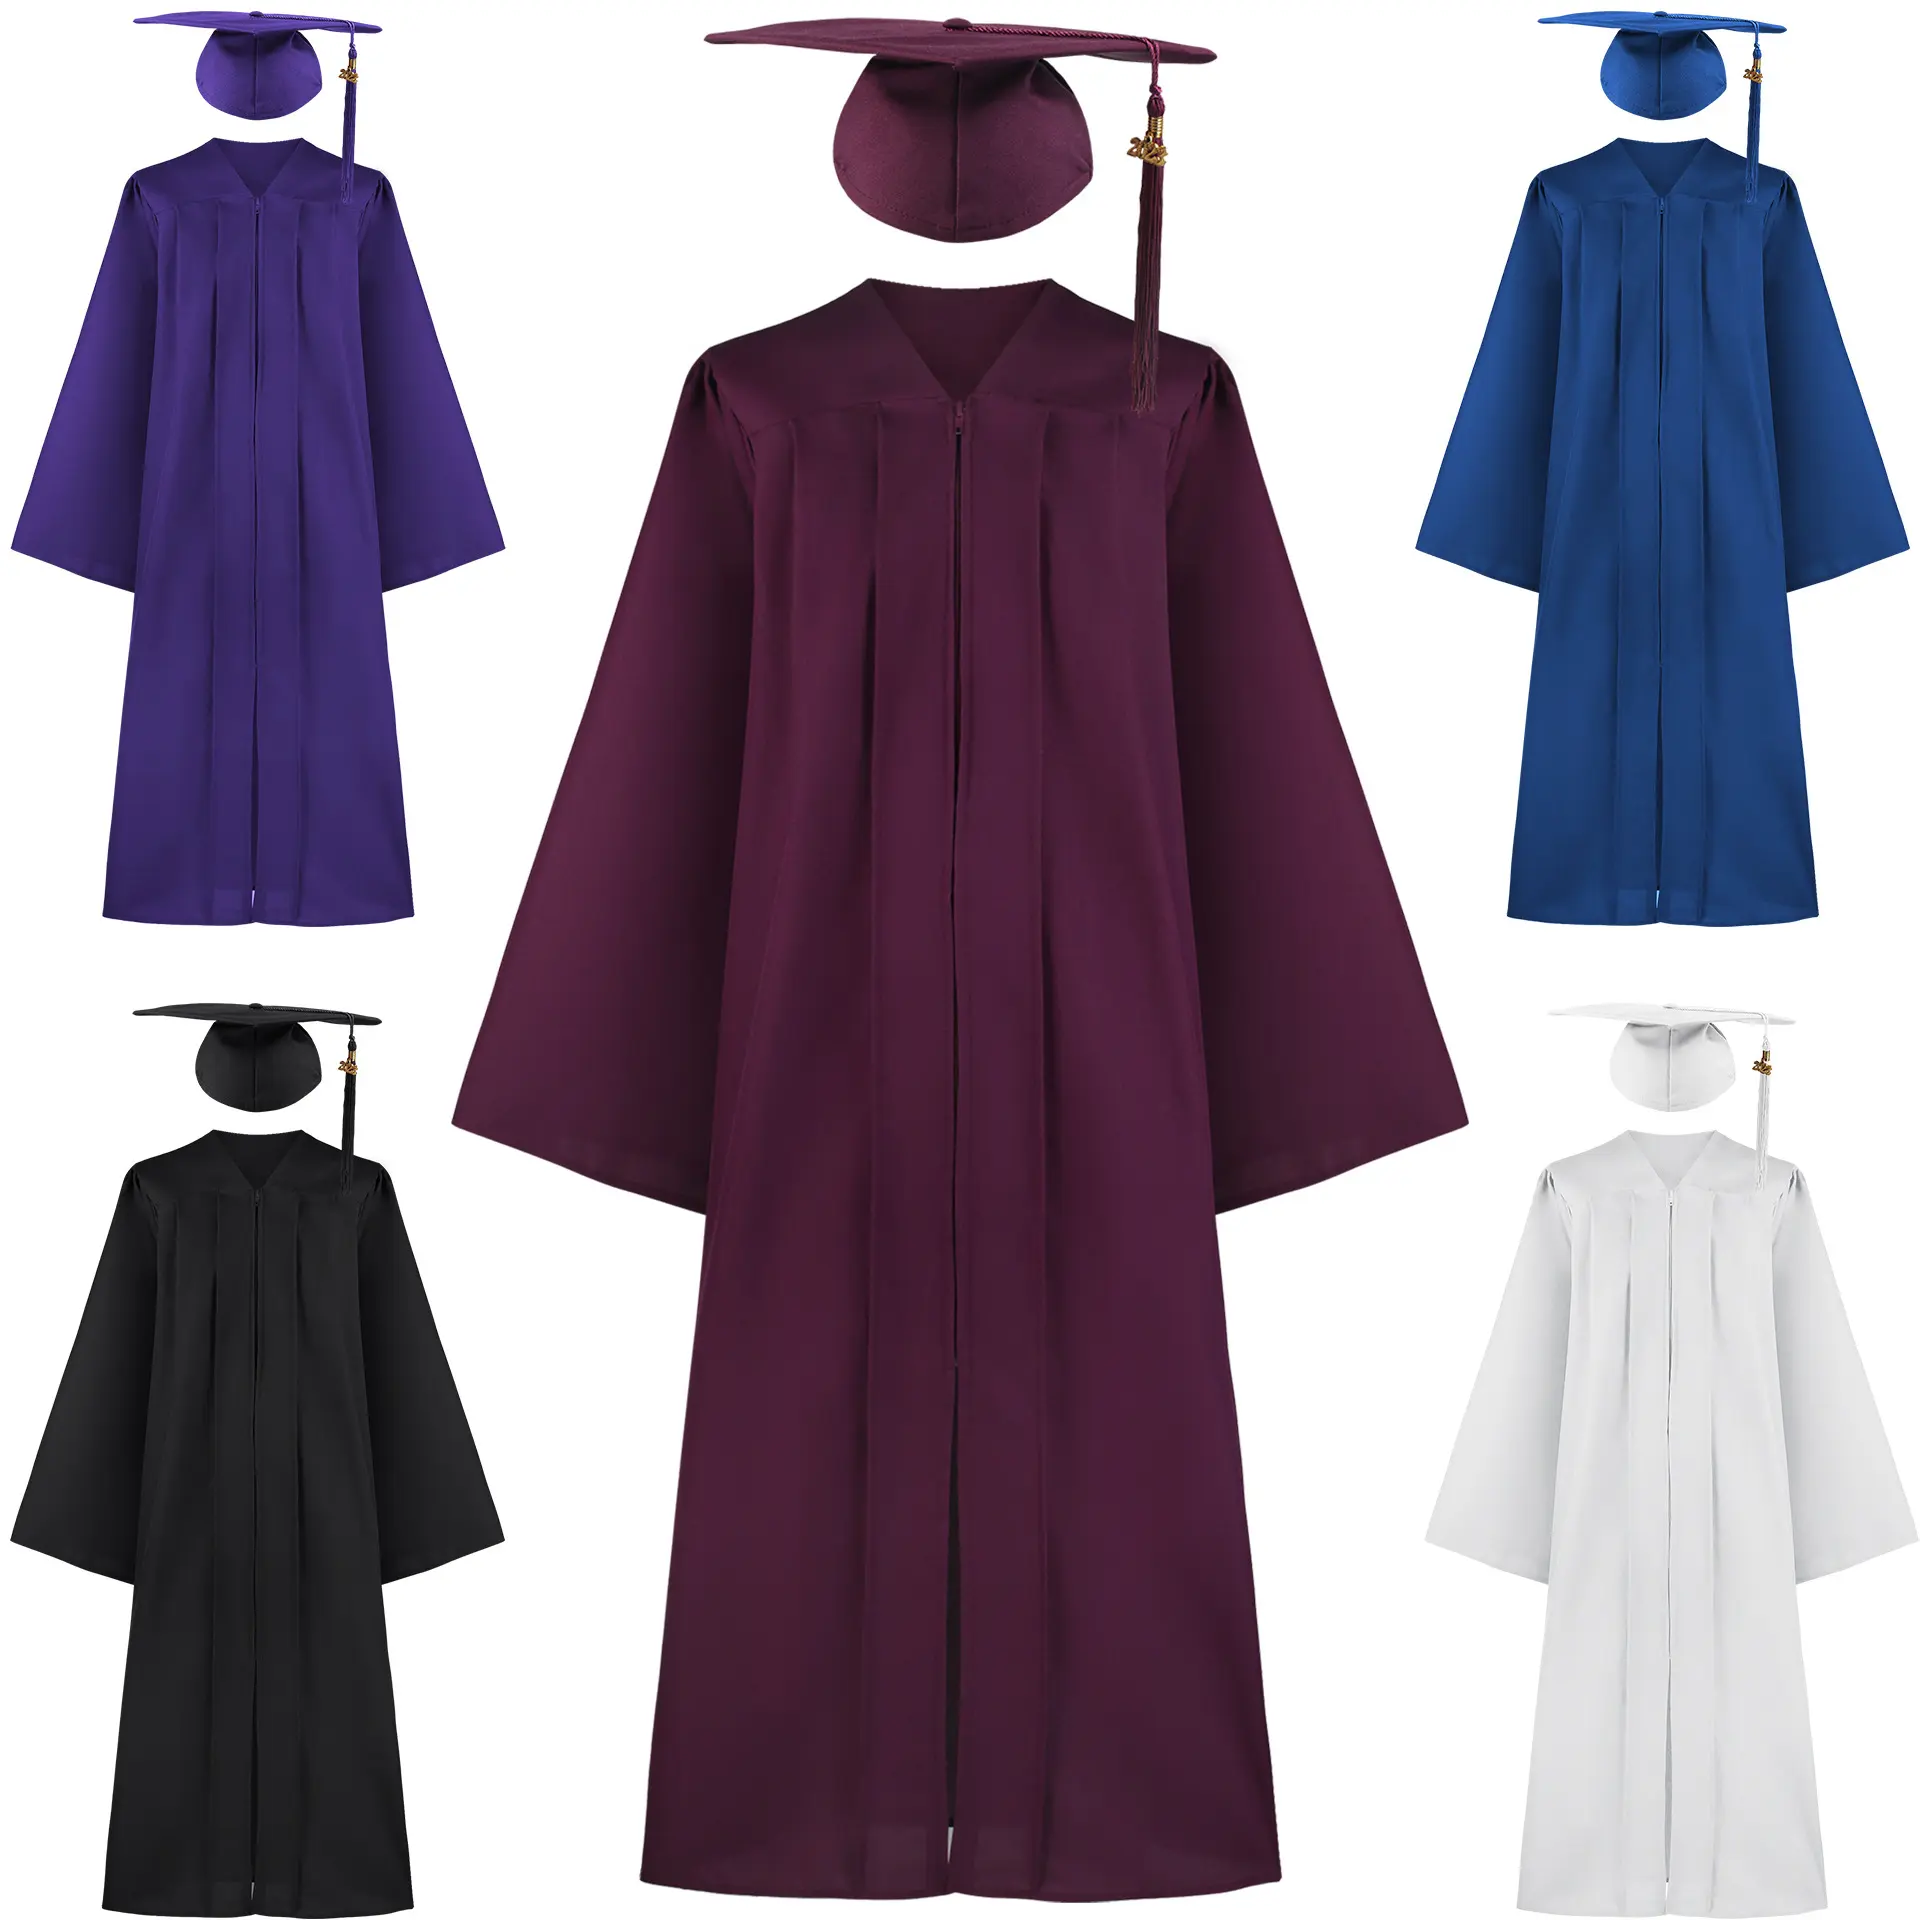 Robe de baccalauréat robe de graduation adulte costume de collège de lycée européen et américain costume de performance de cosplay